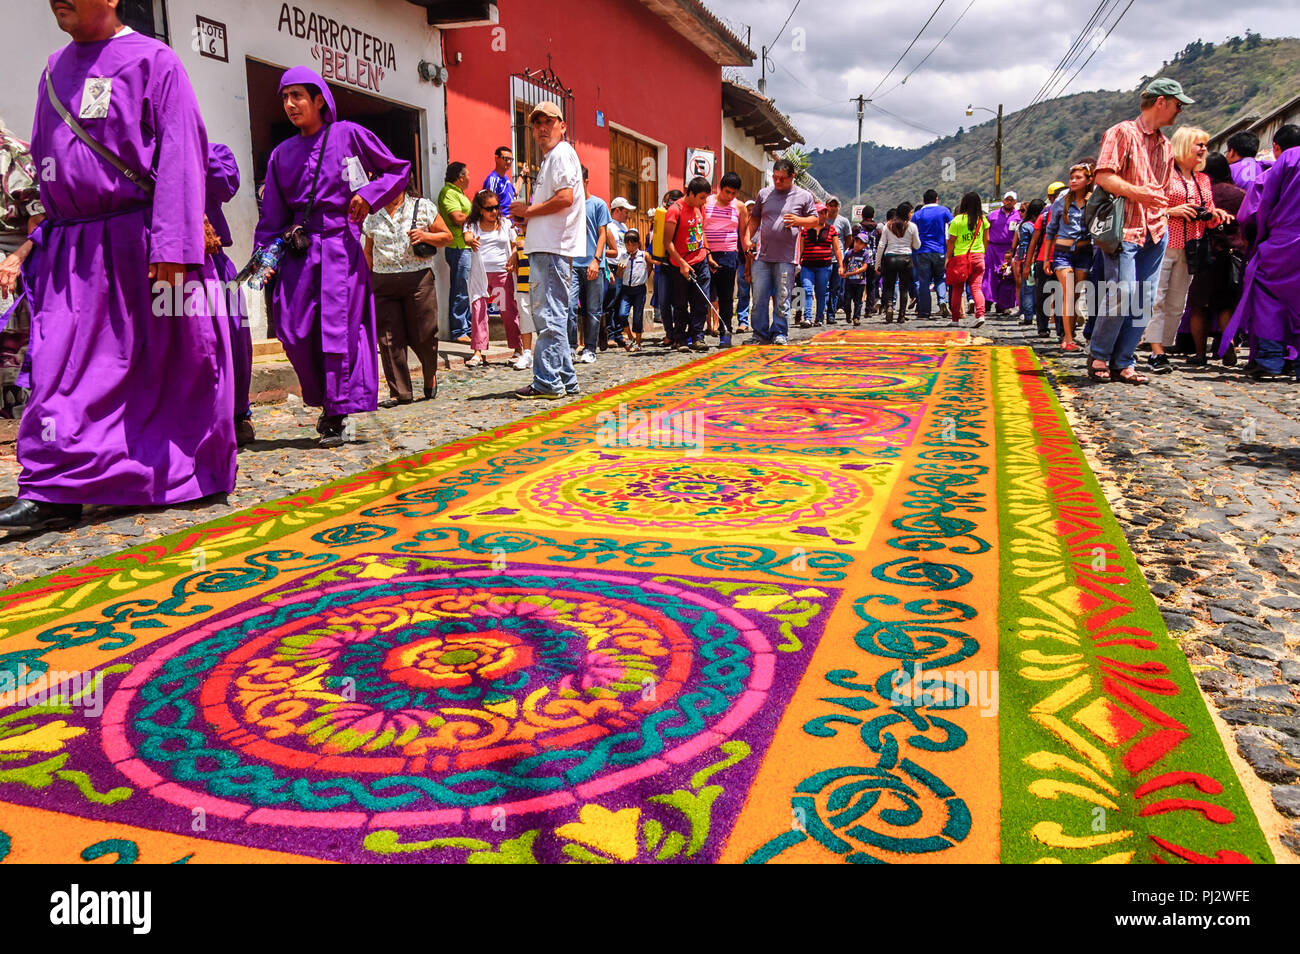 Antigua, Guatemala - 15. März 2015: Die fastenzeit Prozession Teppich in der kolonialen Stadt mit dem berühmtesten Feierlichkeiten zur Karwoche in Lateinamerika. Stockfoto